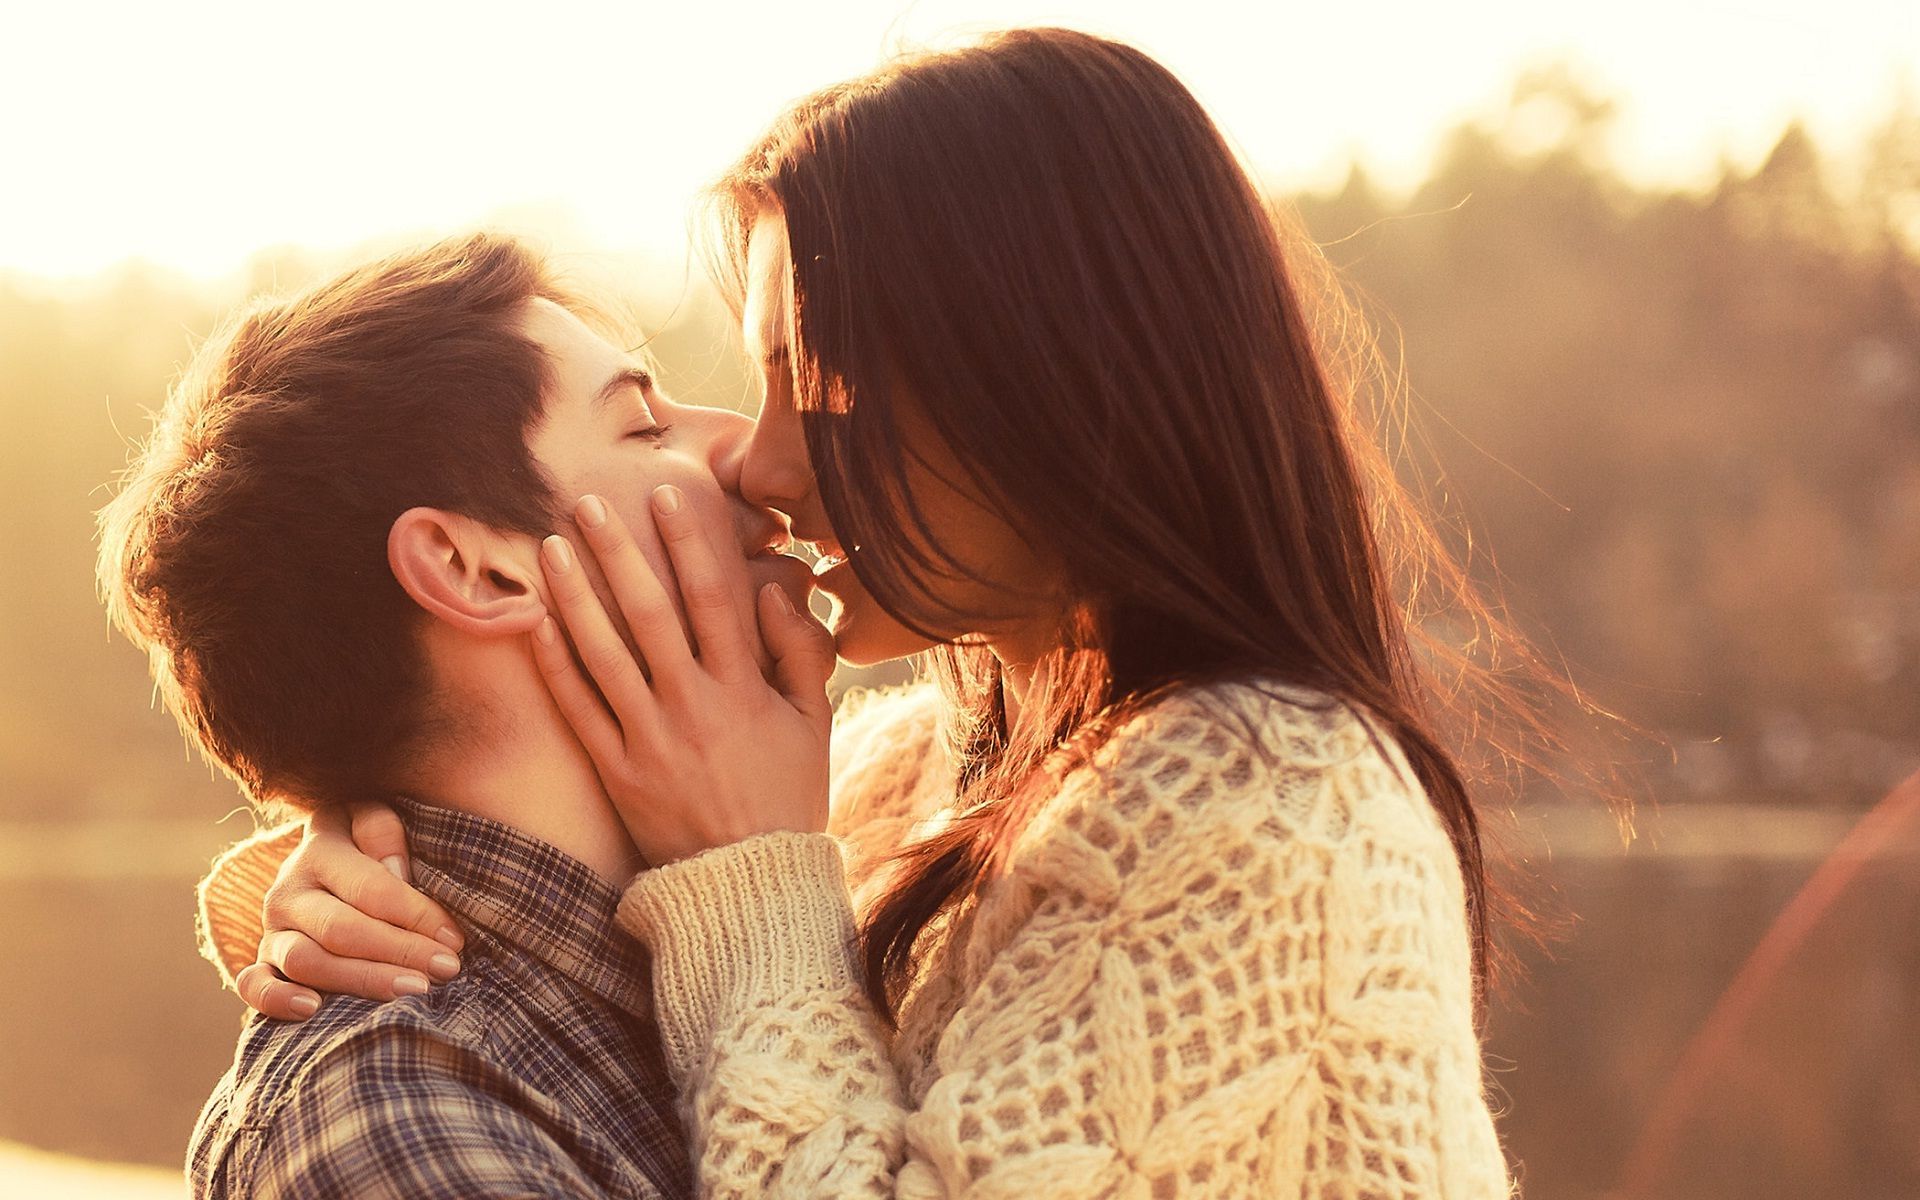 Парень целует красивую девушку. Красивый поцелуй. Объятия влюбленных. Пара влюбленных. Влюбленные парочки.